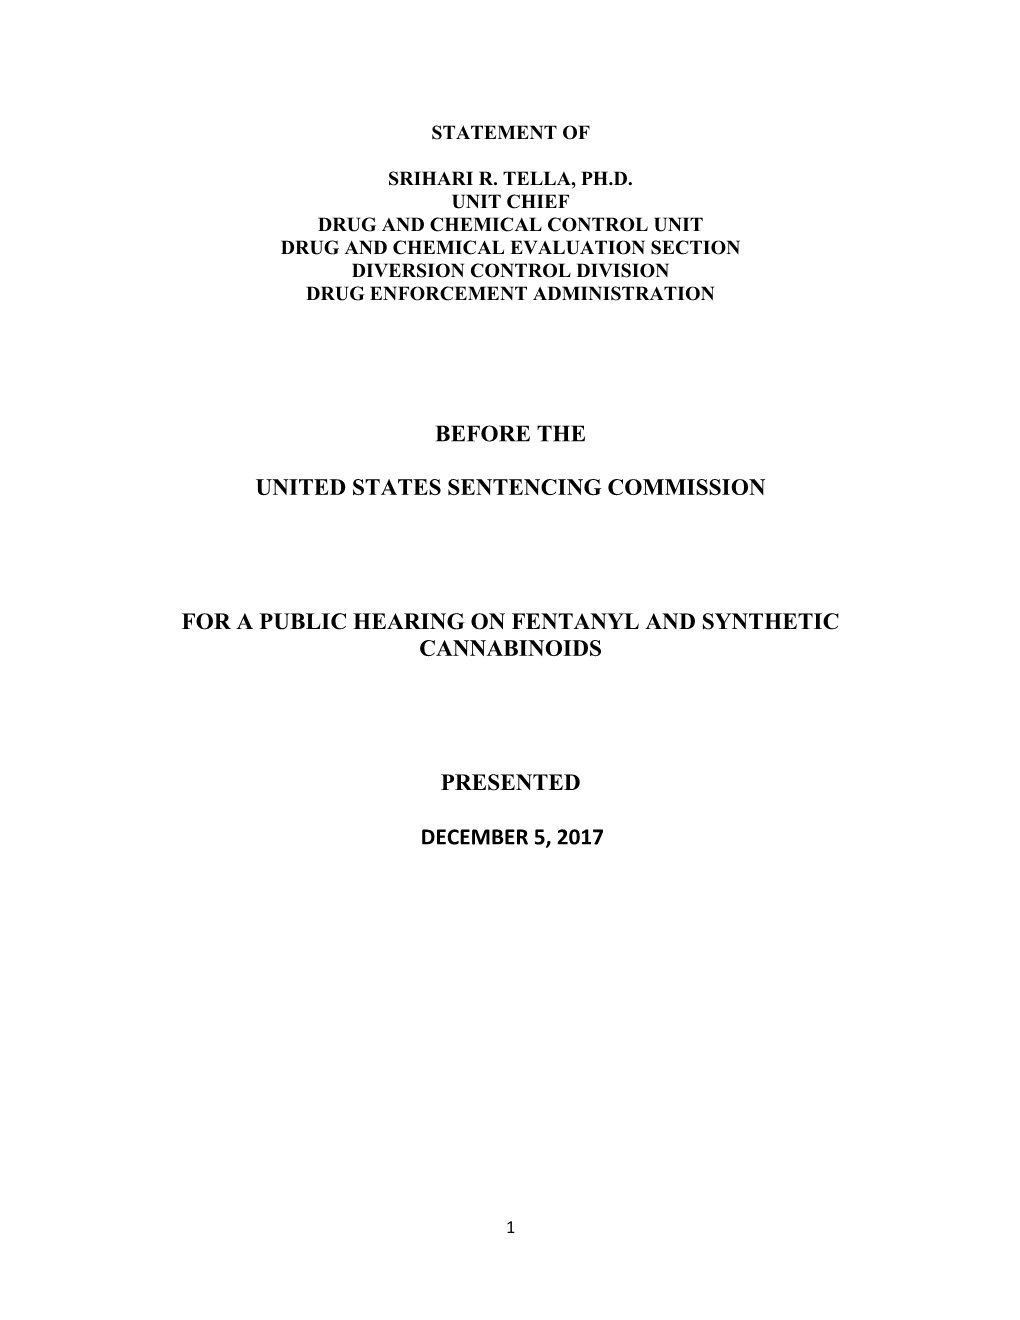 U.S. Sentencing Commission Public Hearing on Fentanyl, Fentanyl